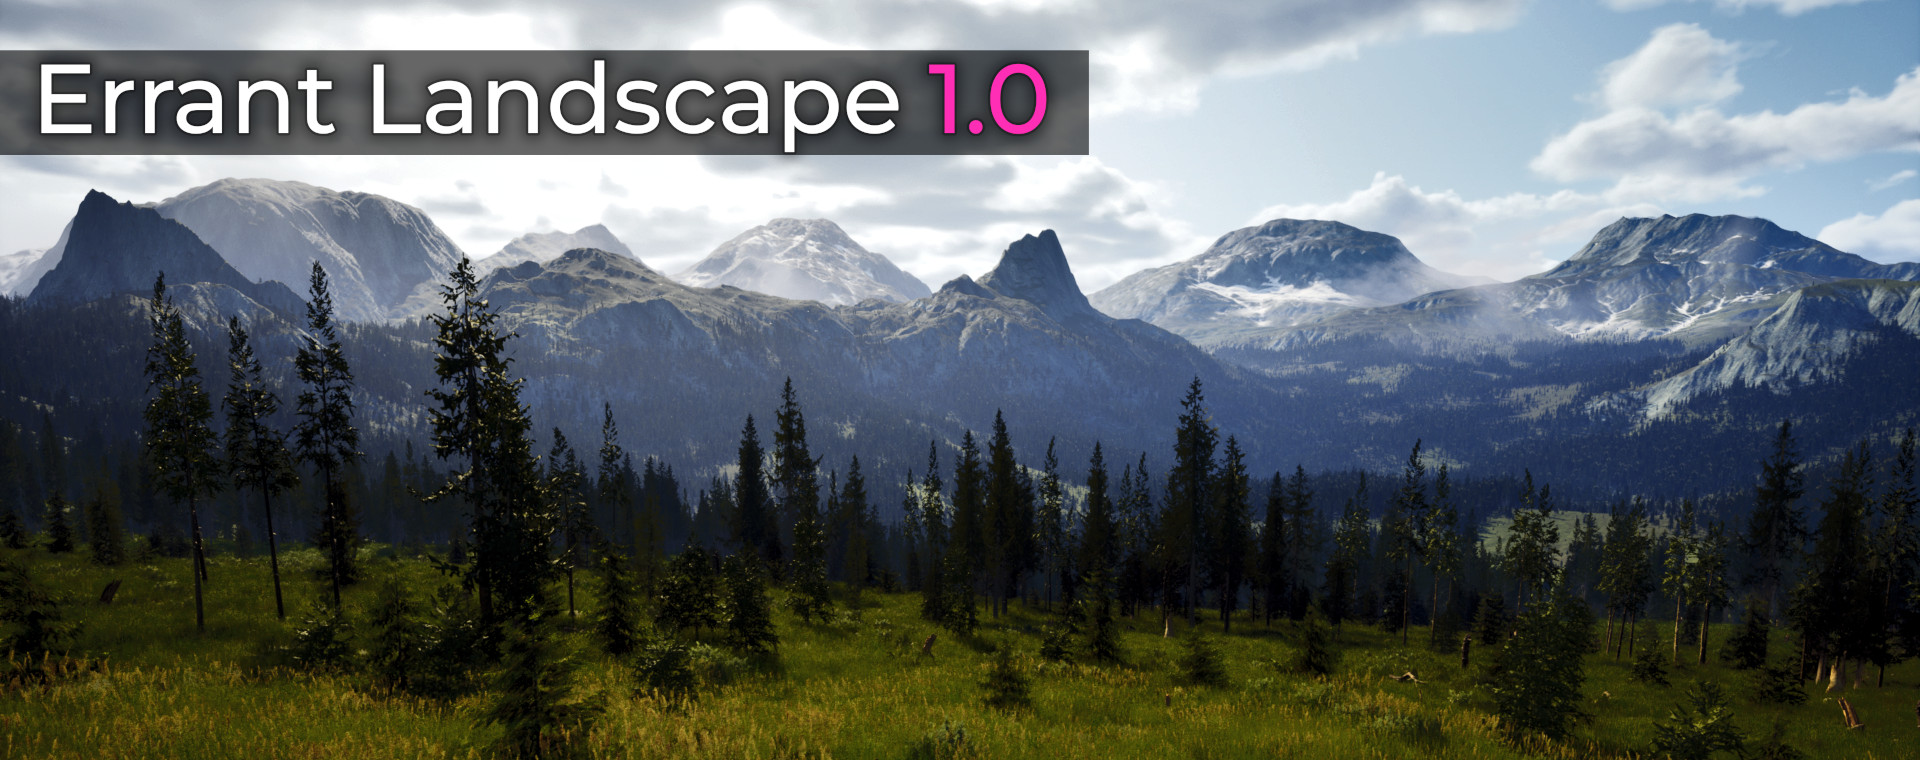 Landscape 1.0 title image